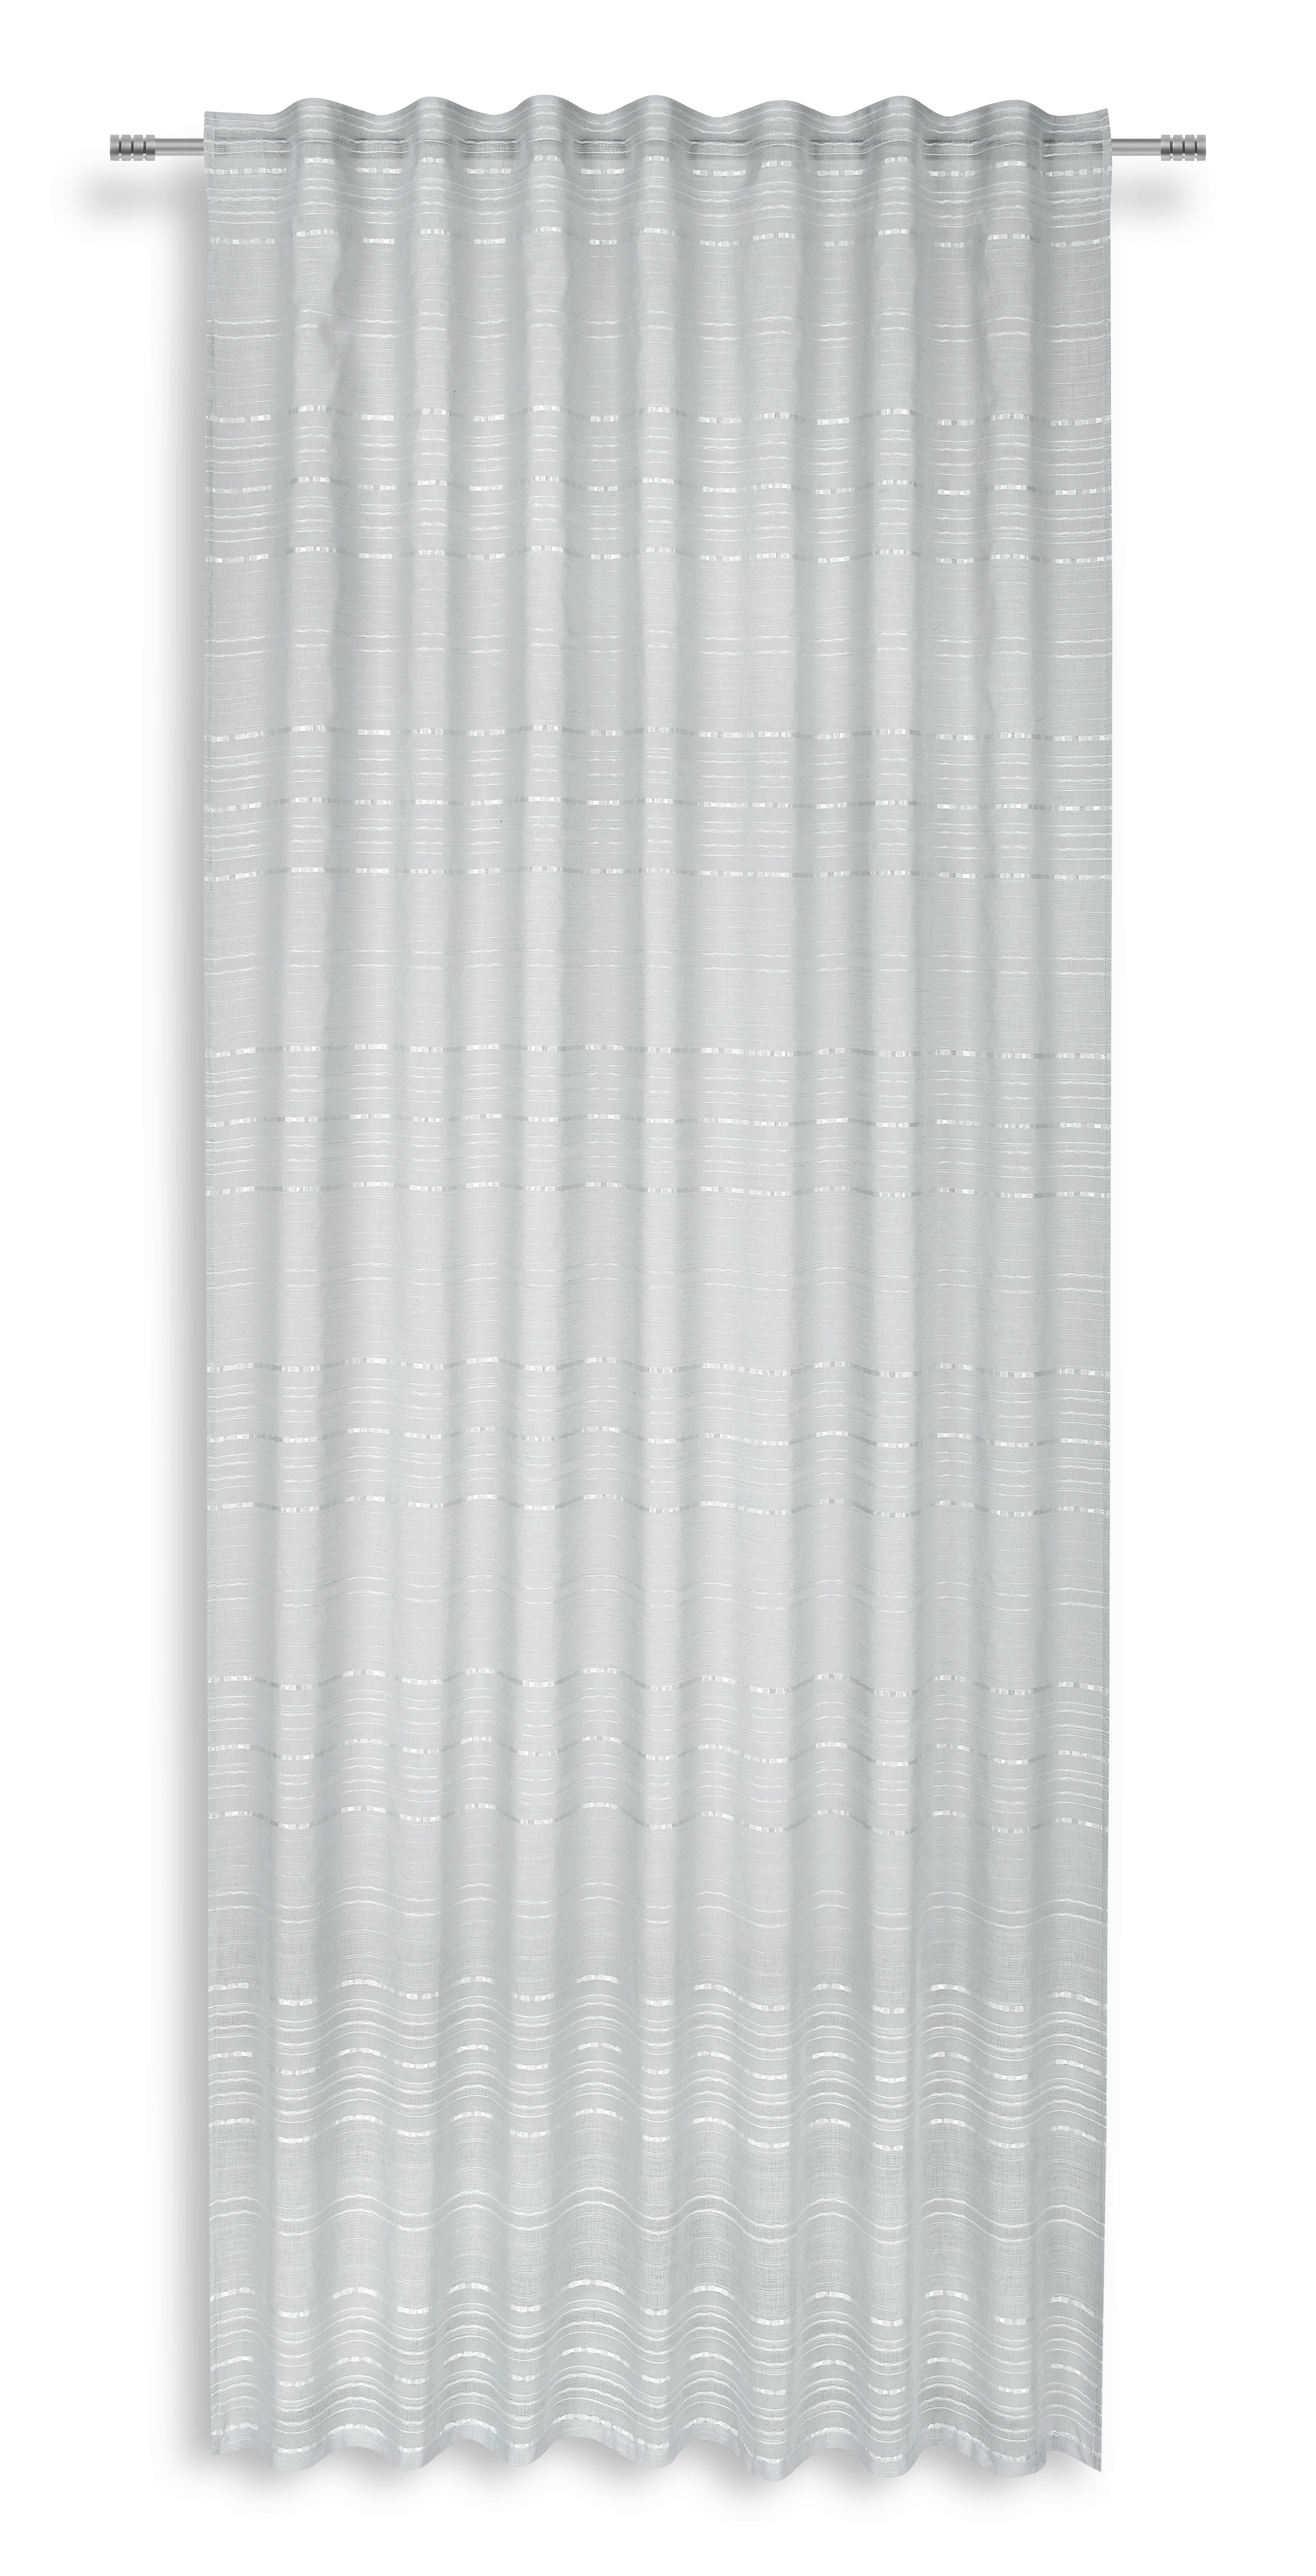 Készfüggöny Alina - Ezüst, modern, Textil (140/245cm) - Luca Bessoni